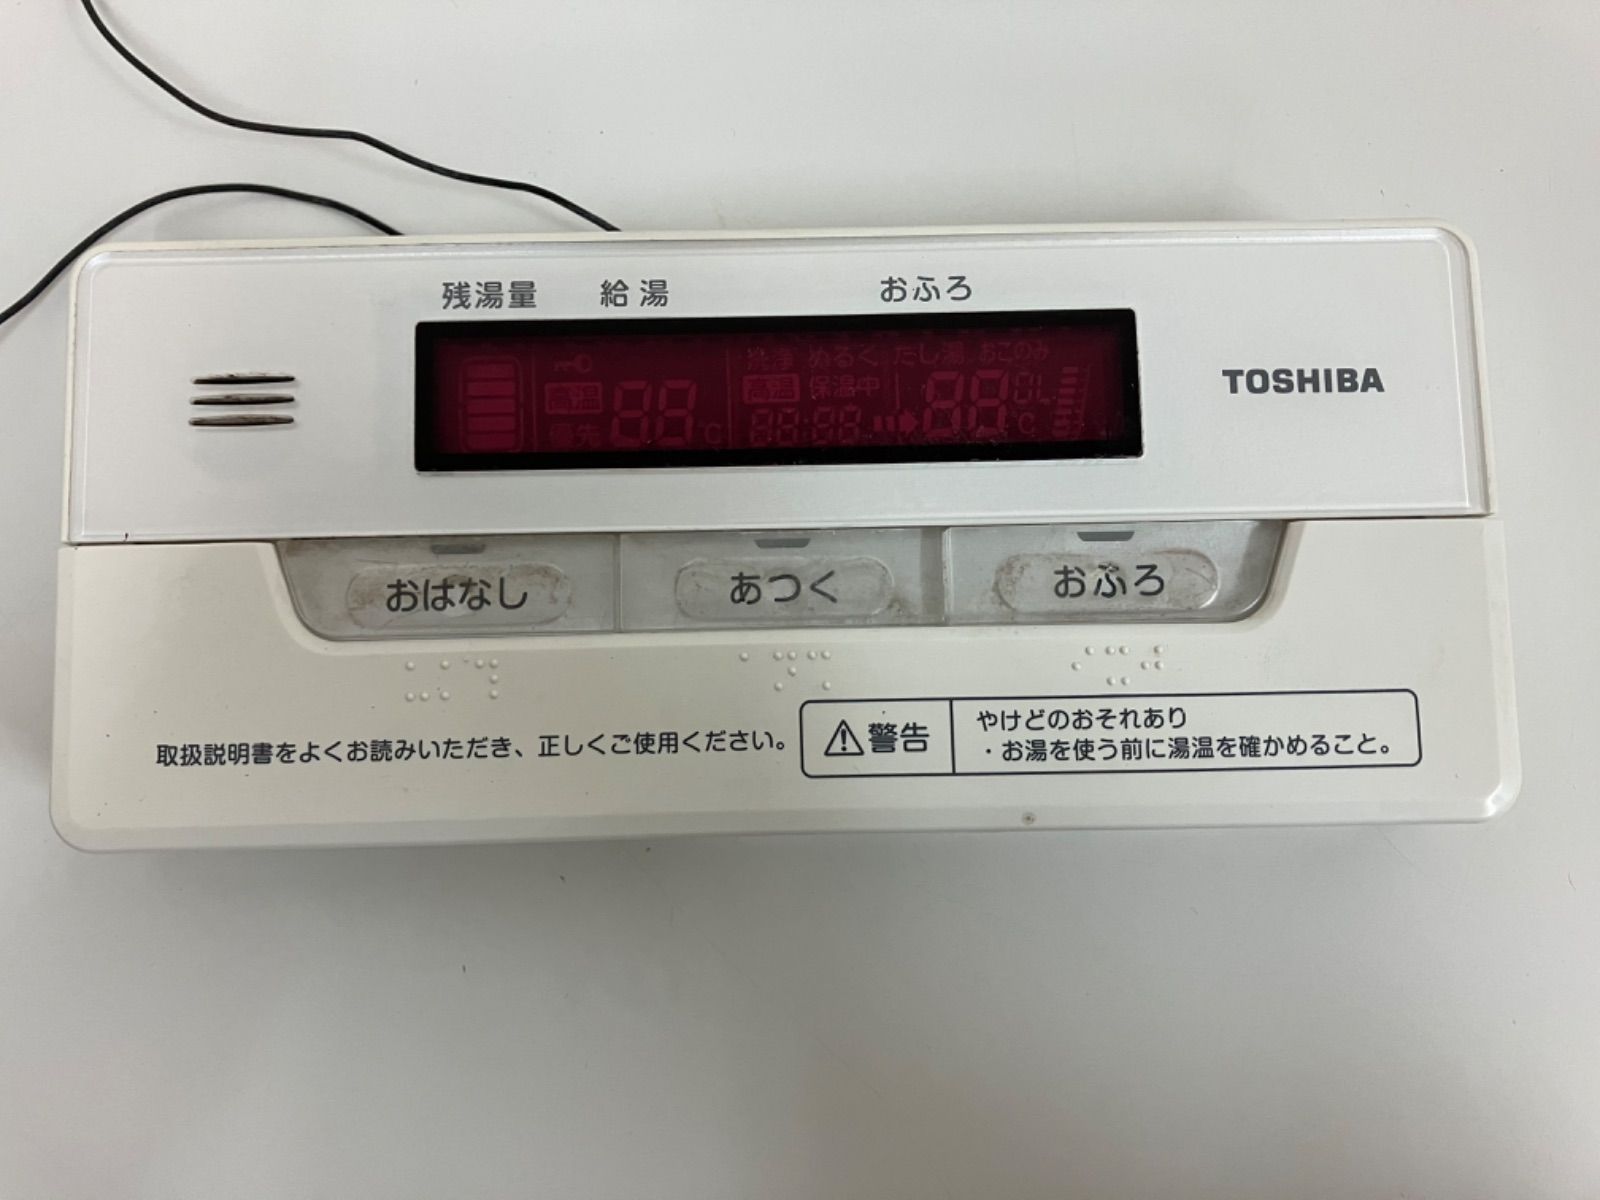 業販東芝 TOSHIBA ヒートポンプユニット 給湯器 HWH-F376HT 2020年製 自然冷媒(CO2) HWH456U エコキュート 配達相談 直接引取 化粧板欠品 給湯設備